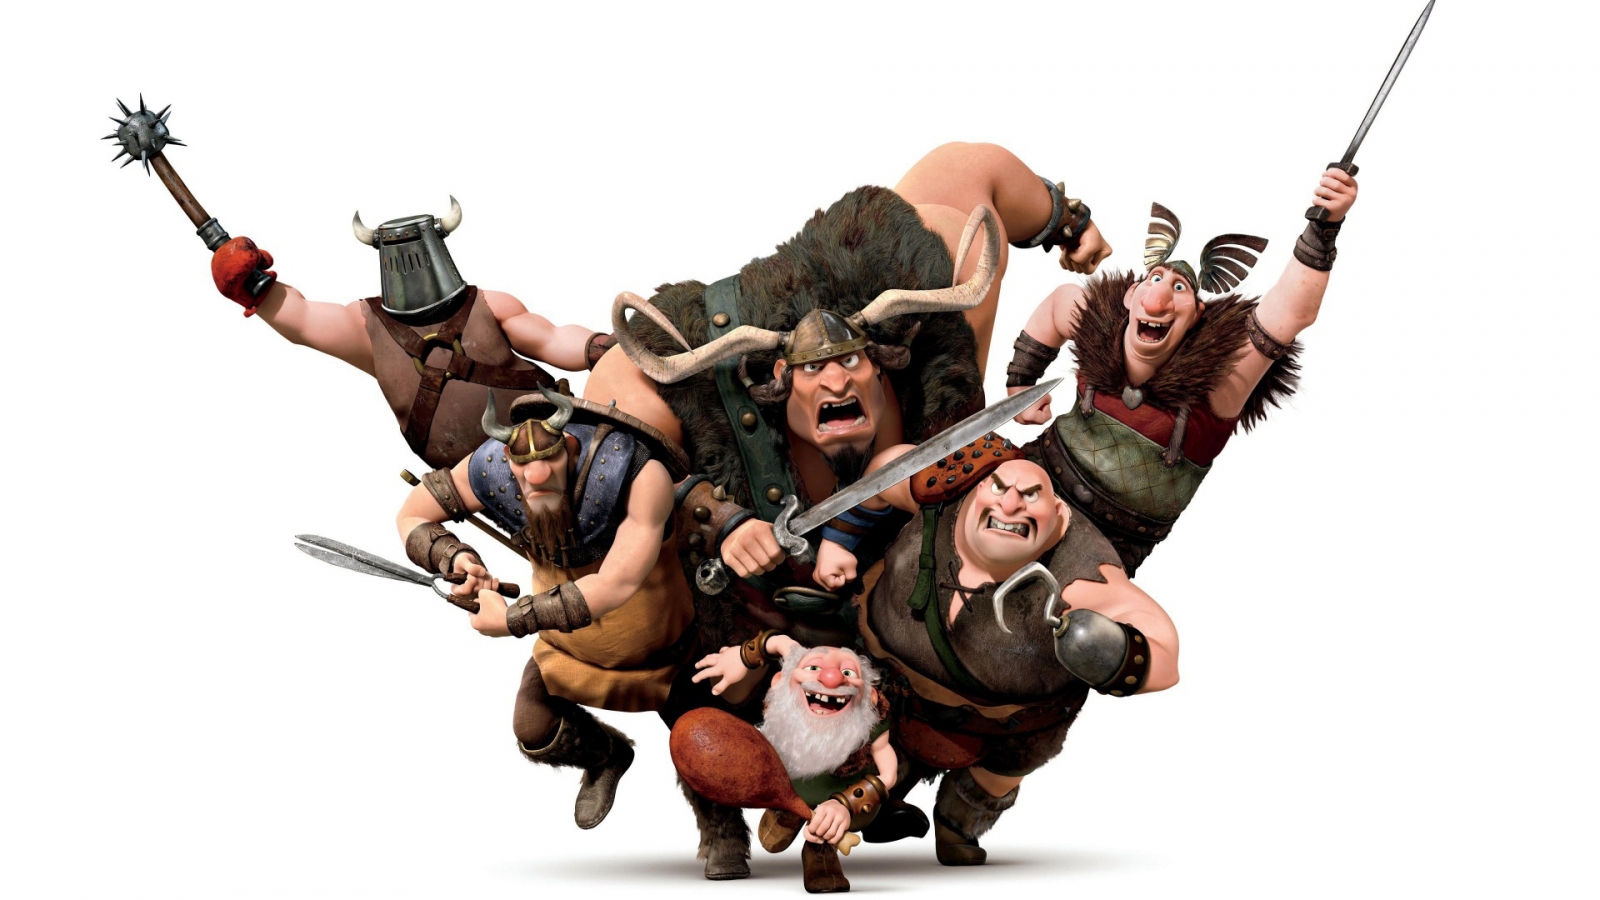 Vikings Warriors for 1600 x 900 HDTV resolution